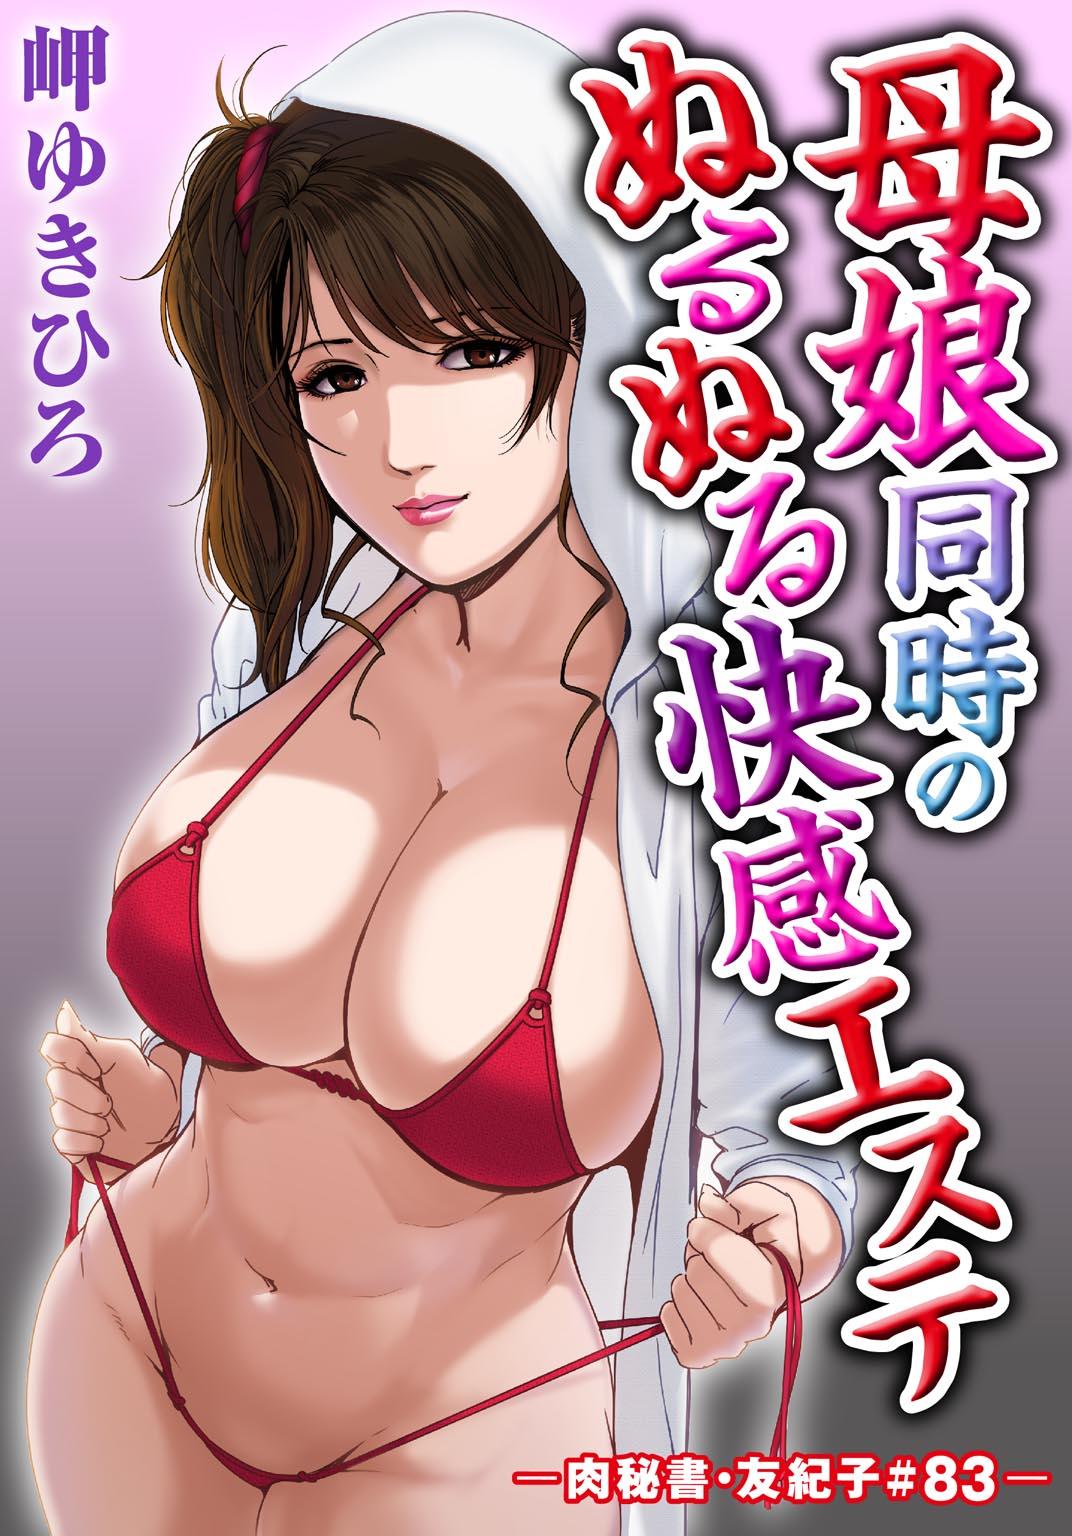 Nikuhisyo Yukiko 24 49